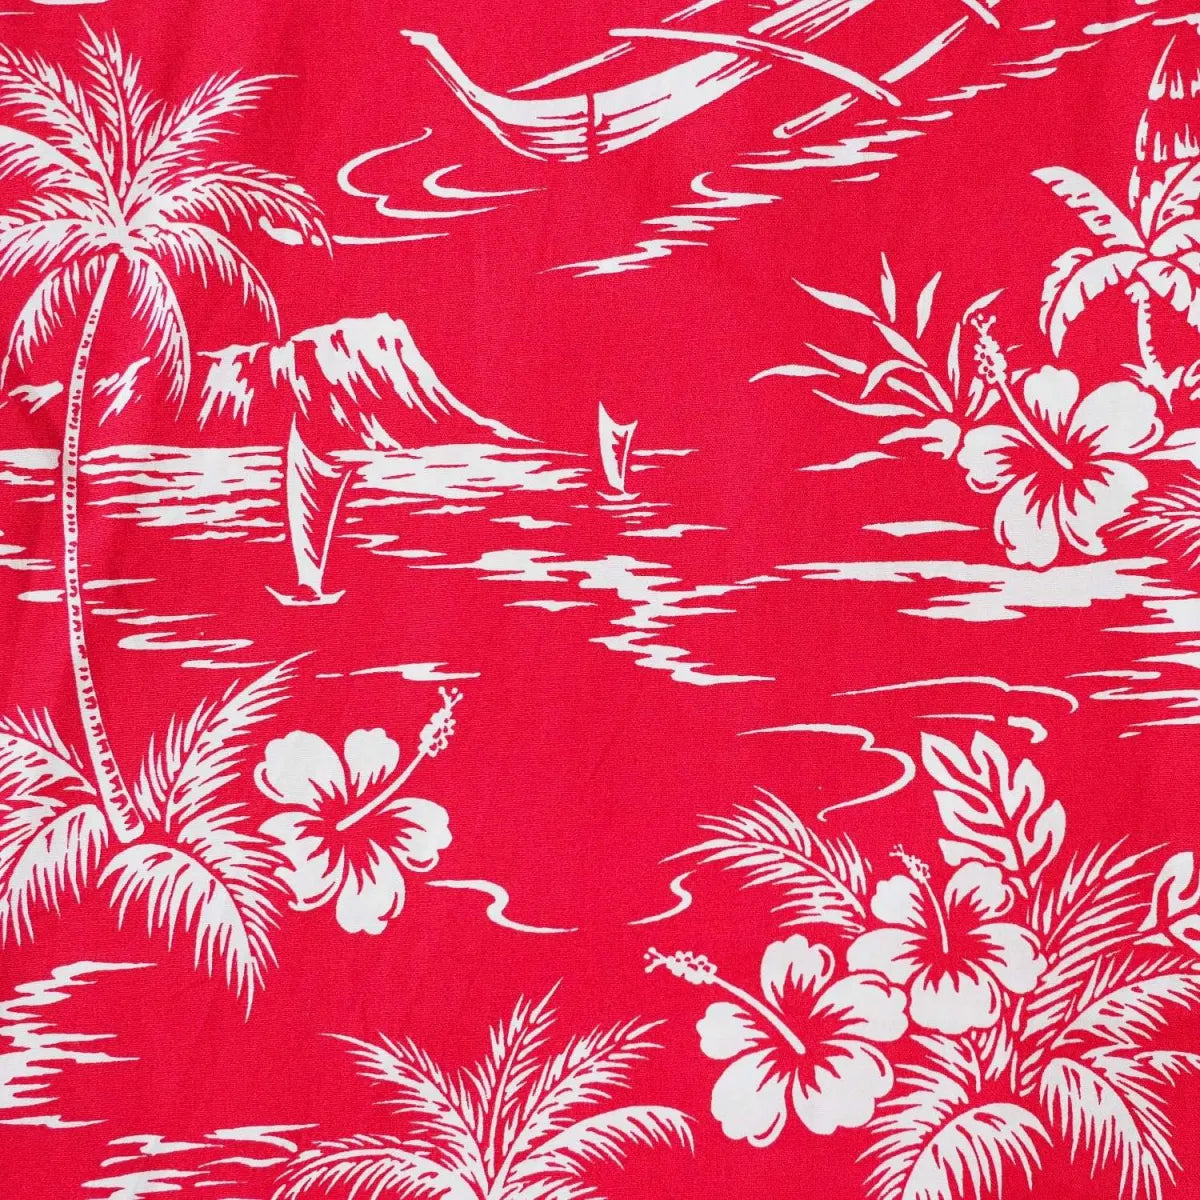 Island red hawaiian boy shirt